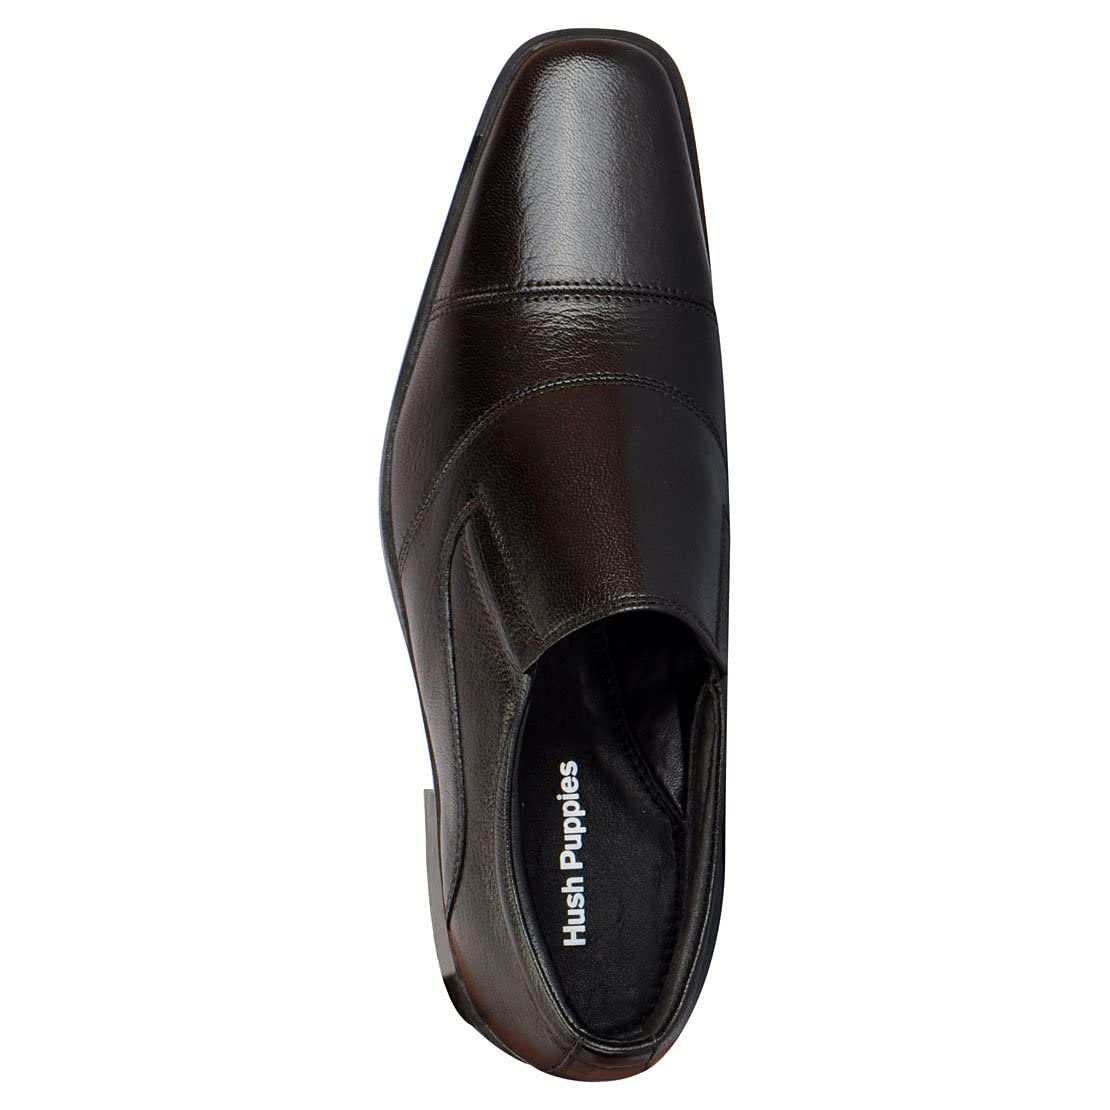 Hush Puppies Men HP02 Flex Black Loafer Formal Shoe - 12 UK